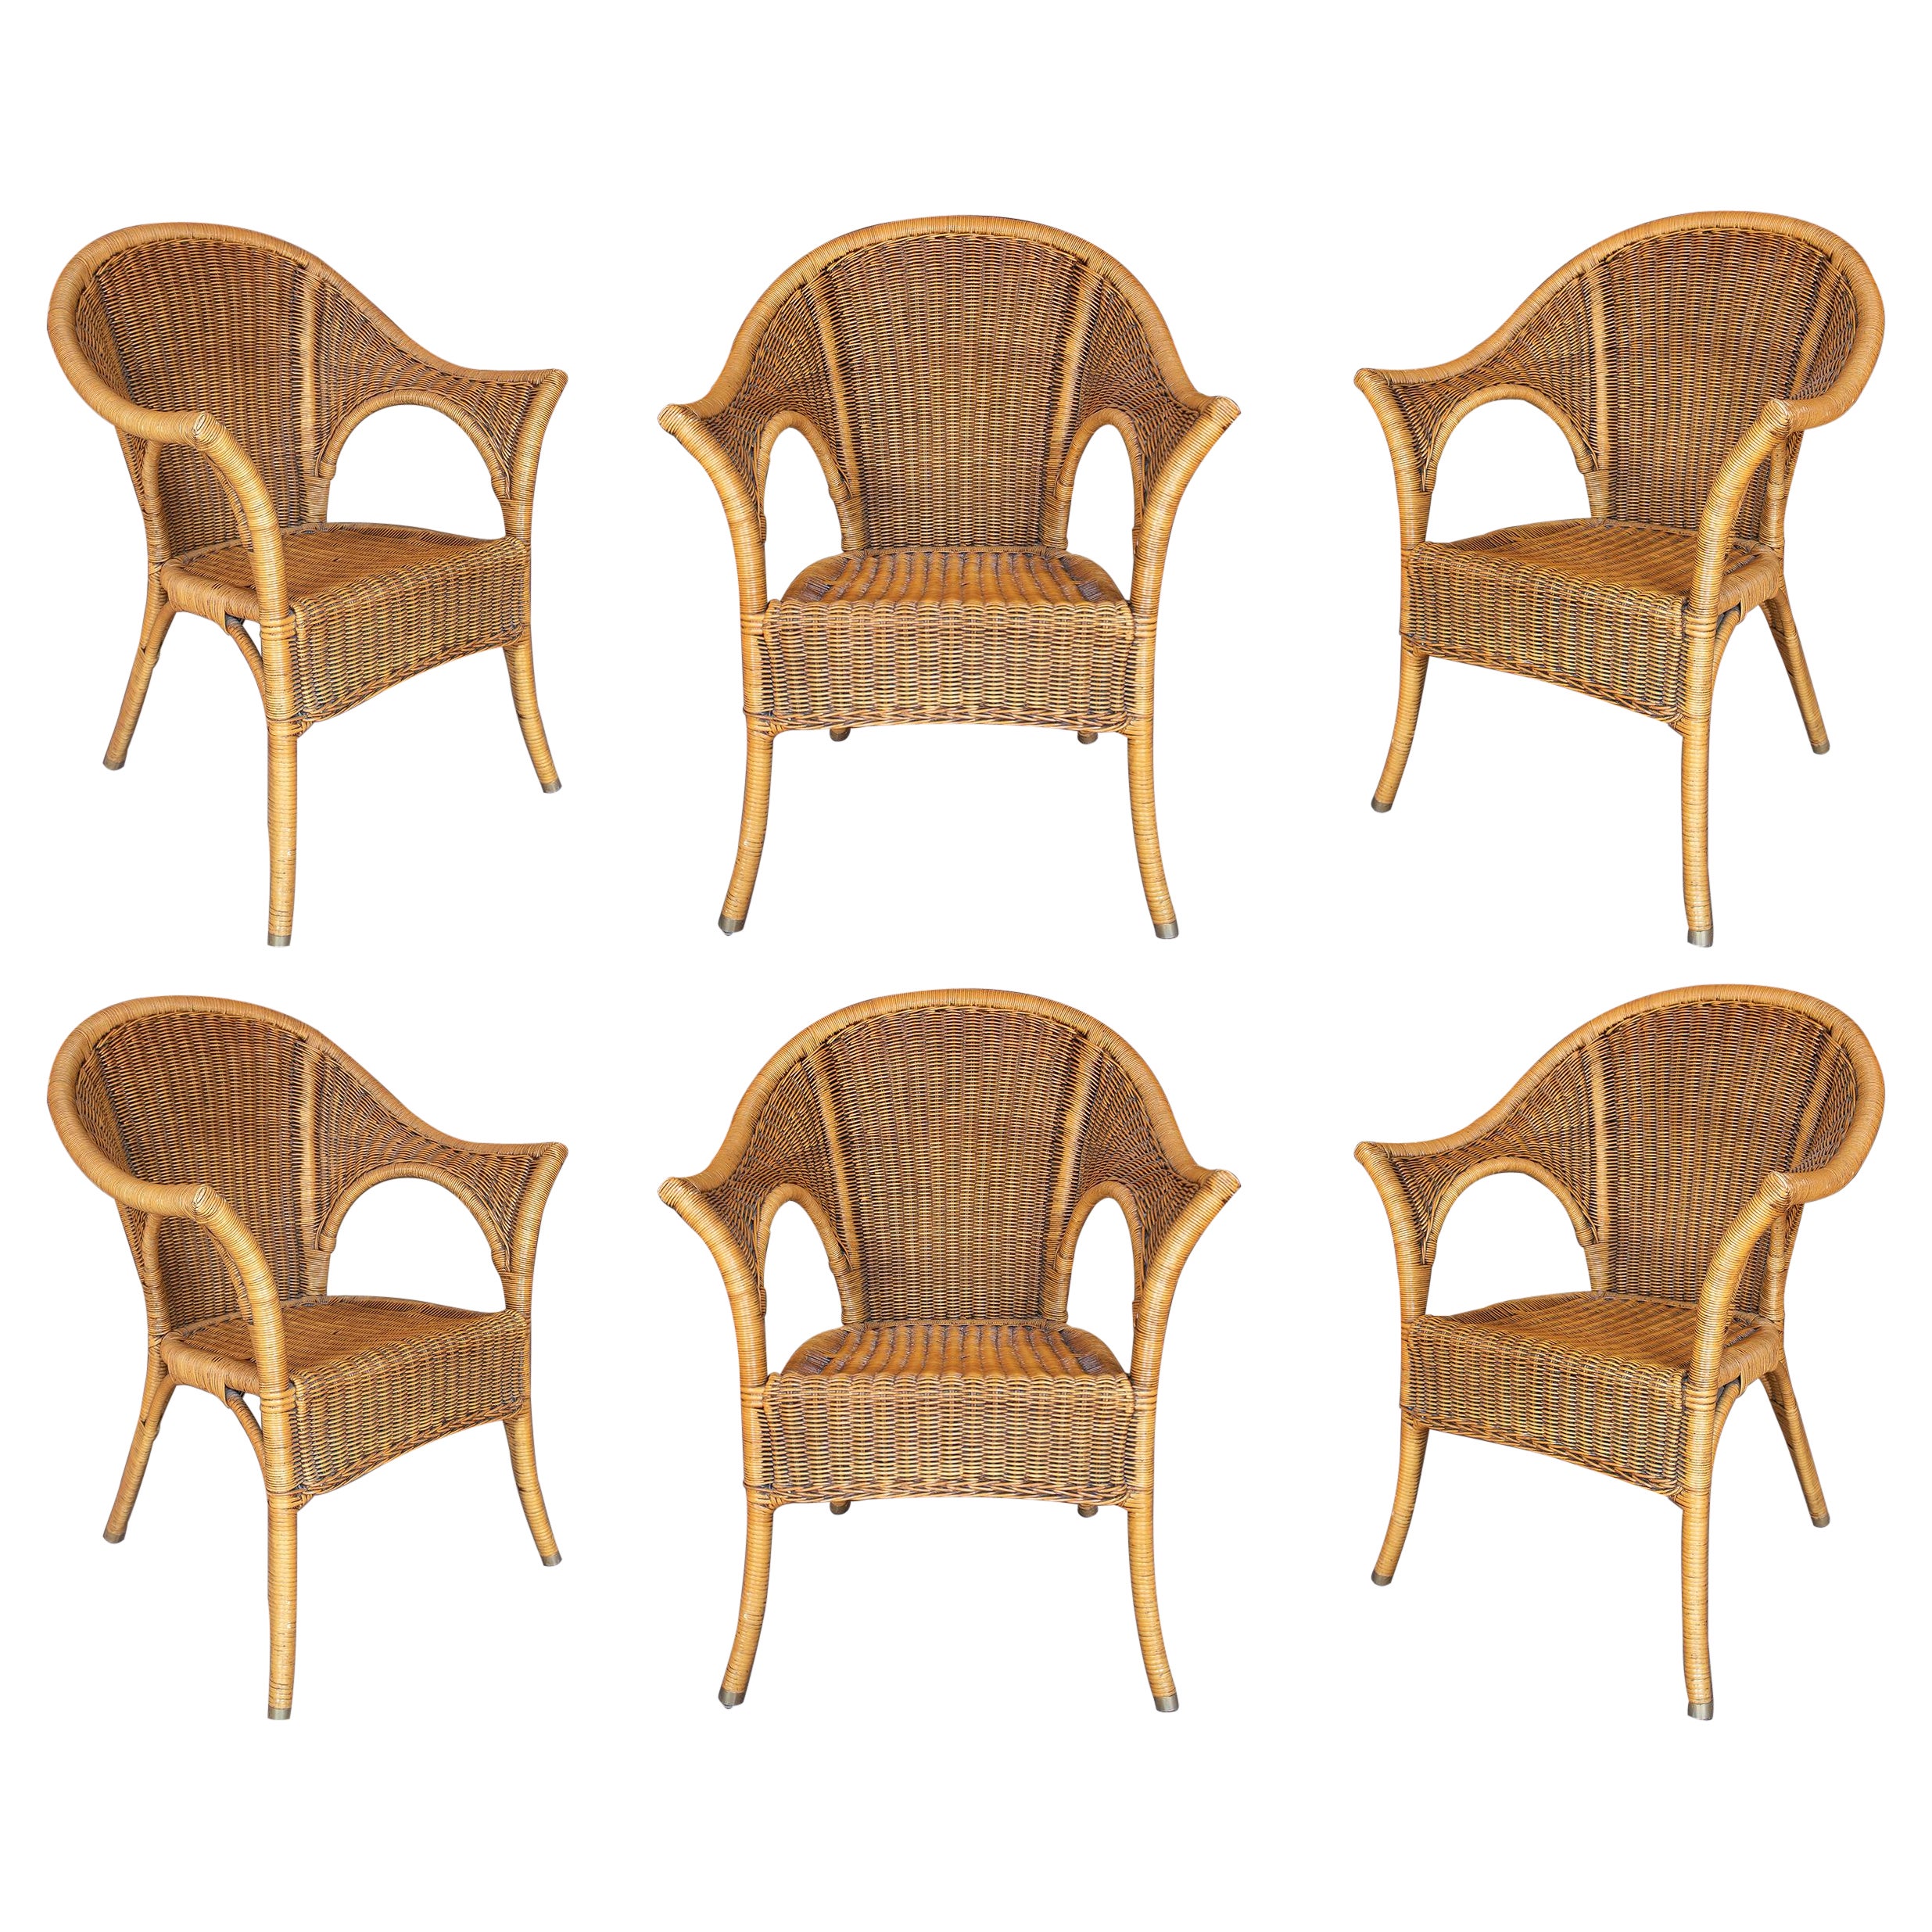 Ensemble de six chaises espagnoles en osier tressé et bambou des années 1980